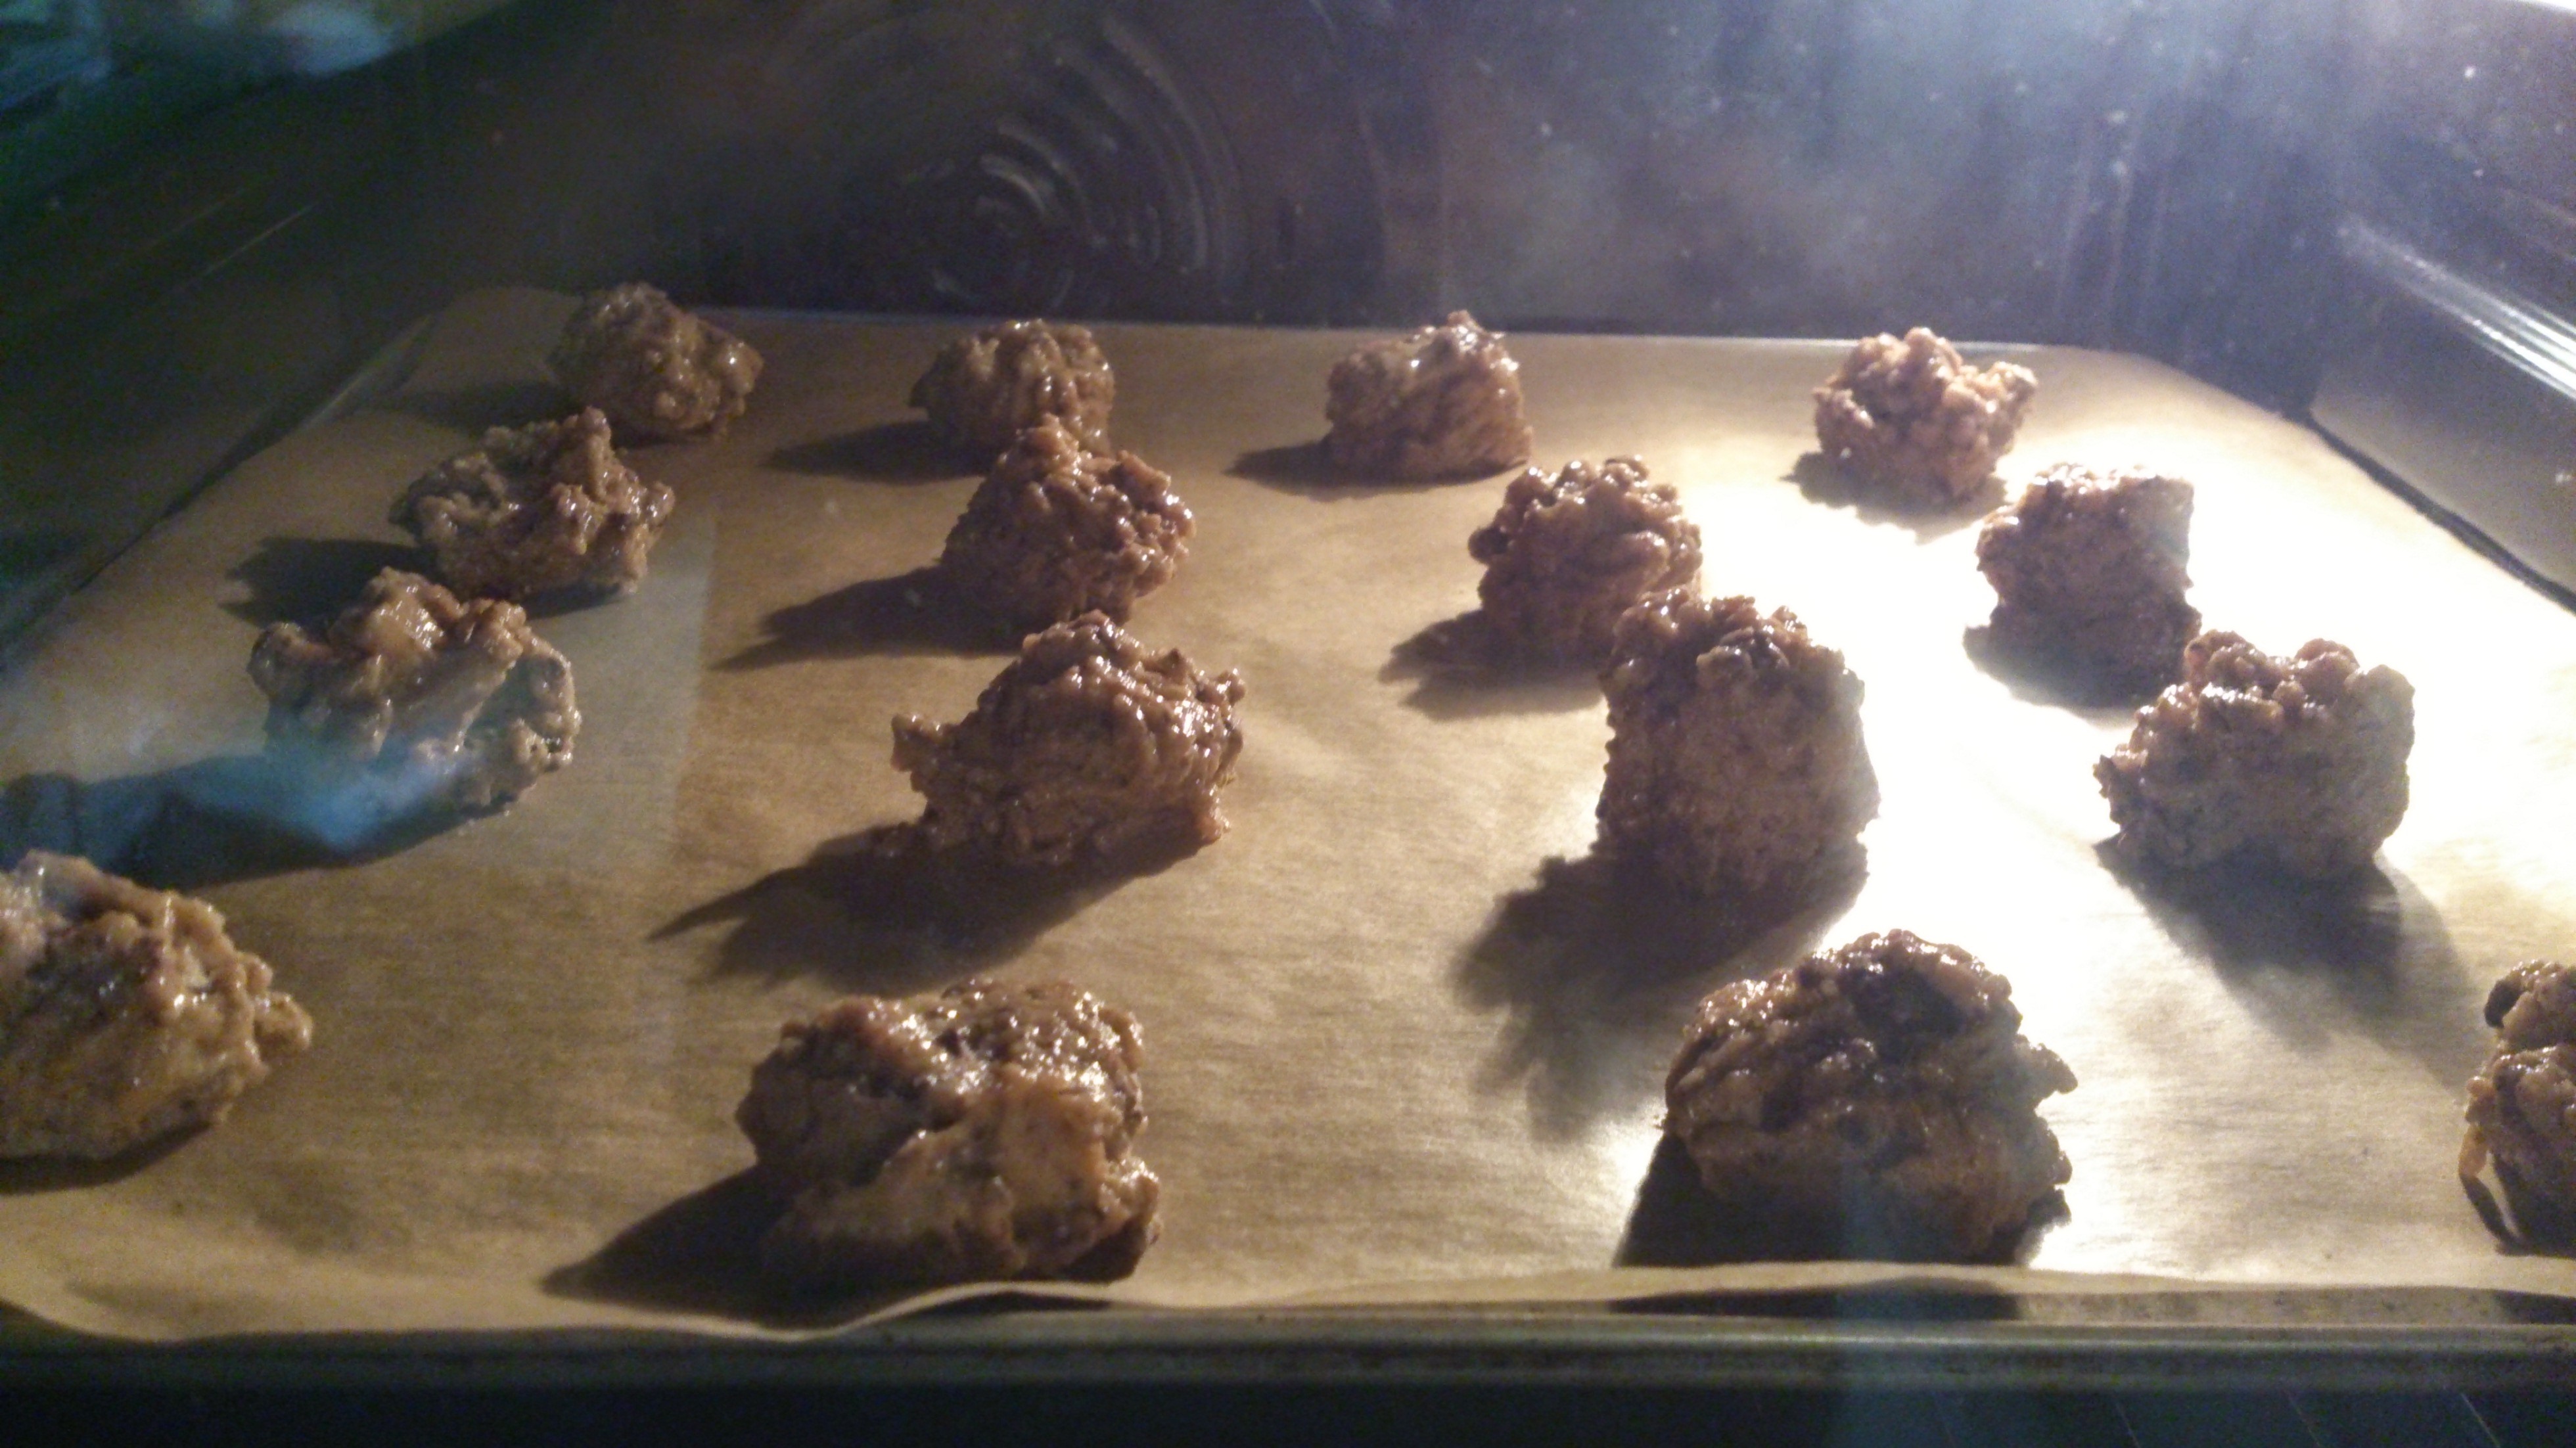 Galletas con pepitas de chocolate (Cookies)